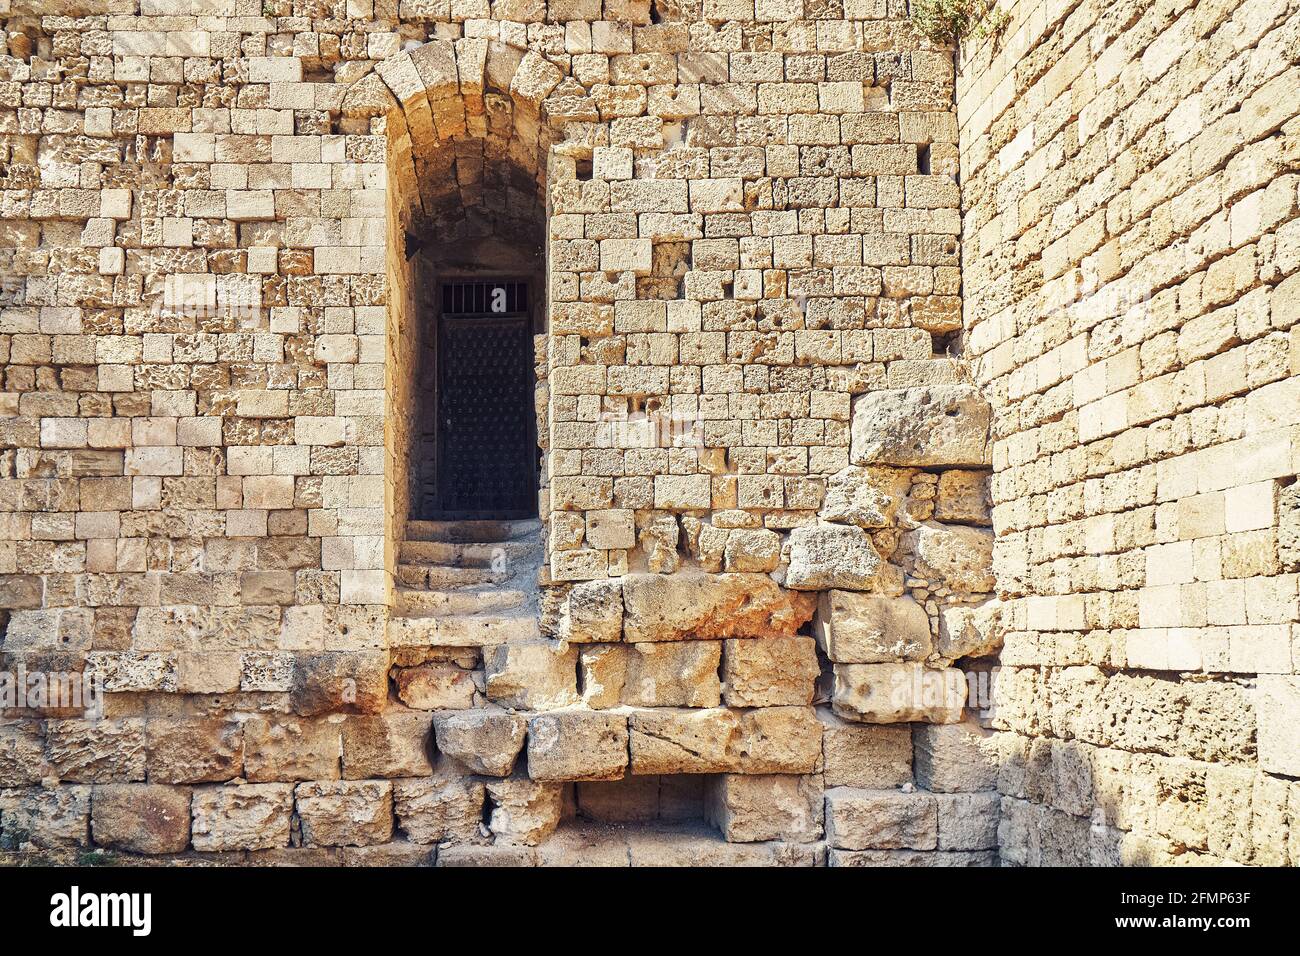 Verwitterte alte Rhodos Festung Ziegel und Steinmauer mit leer Bogen Tür unter hellem Sonnenlicht im Sommer Griechenland Stockfoto